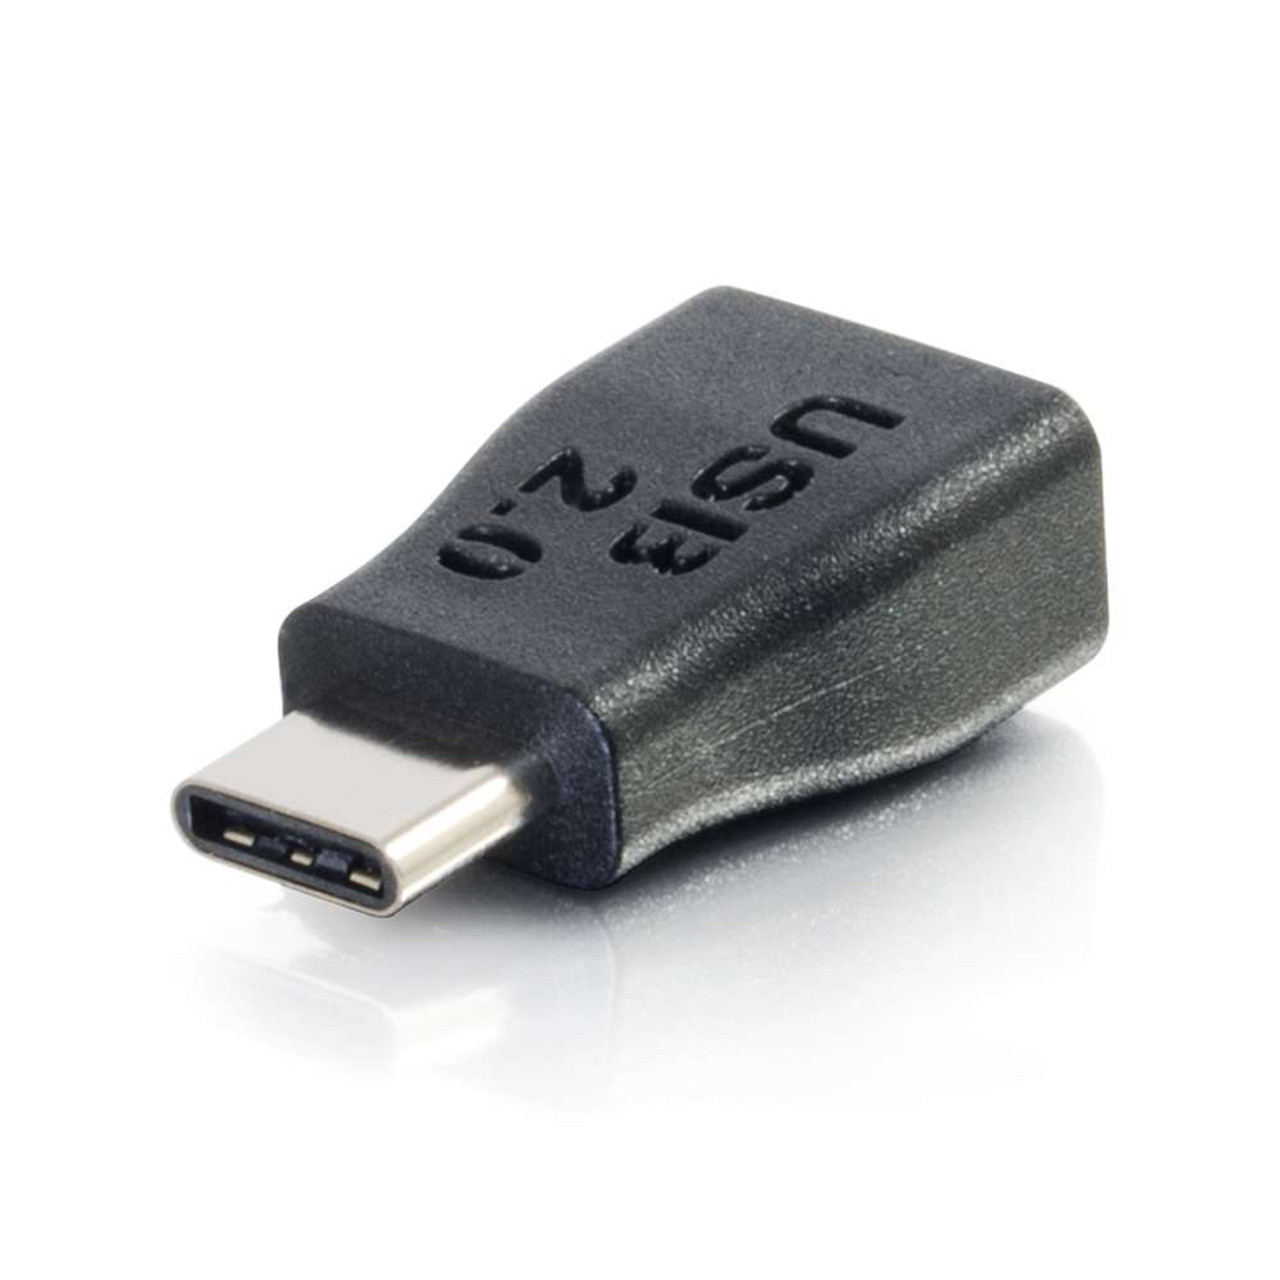 Adaptador USB-C a Micro-USB USB 2.0 - Cables USB-C